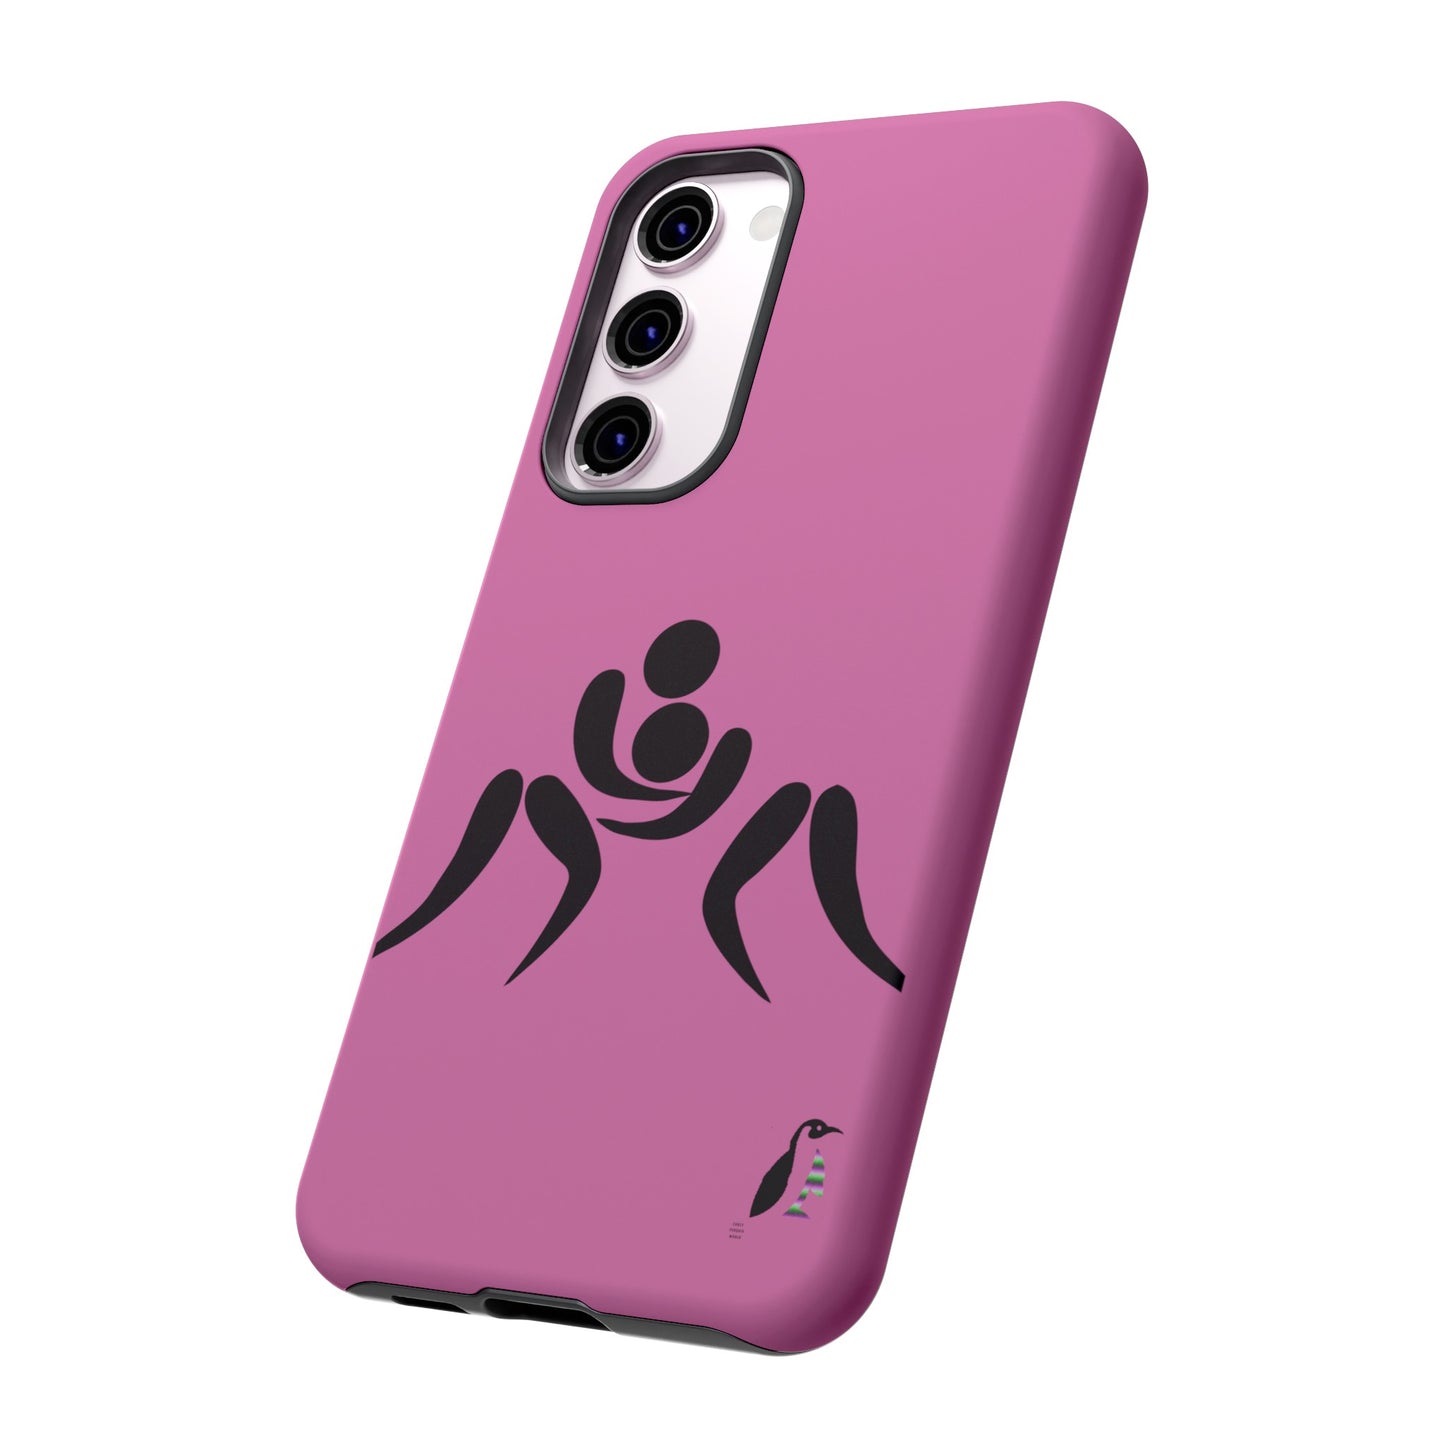 Tough Cases (for Samsung & Google): Wrestling Lite Pink